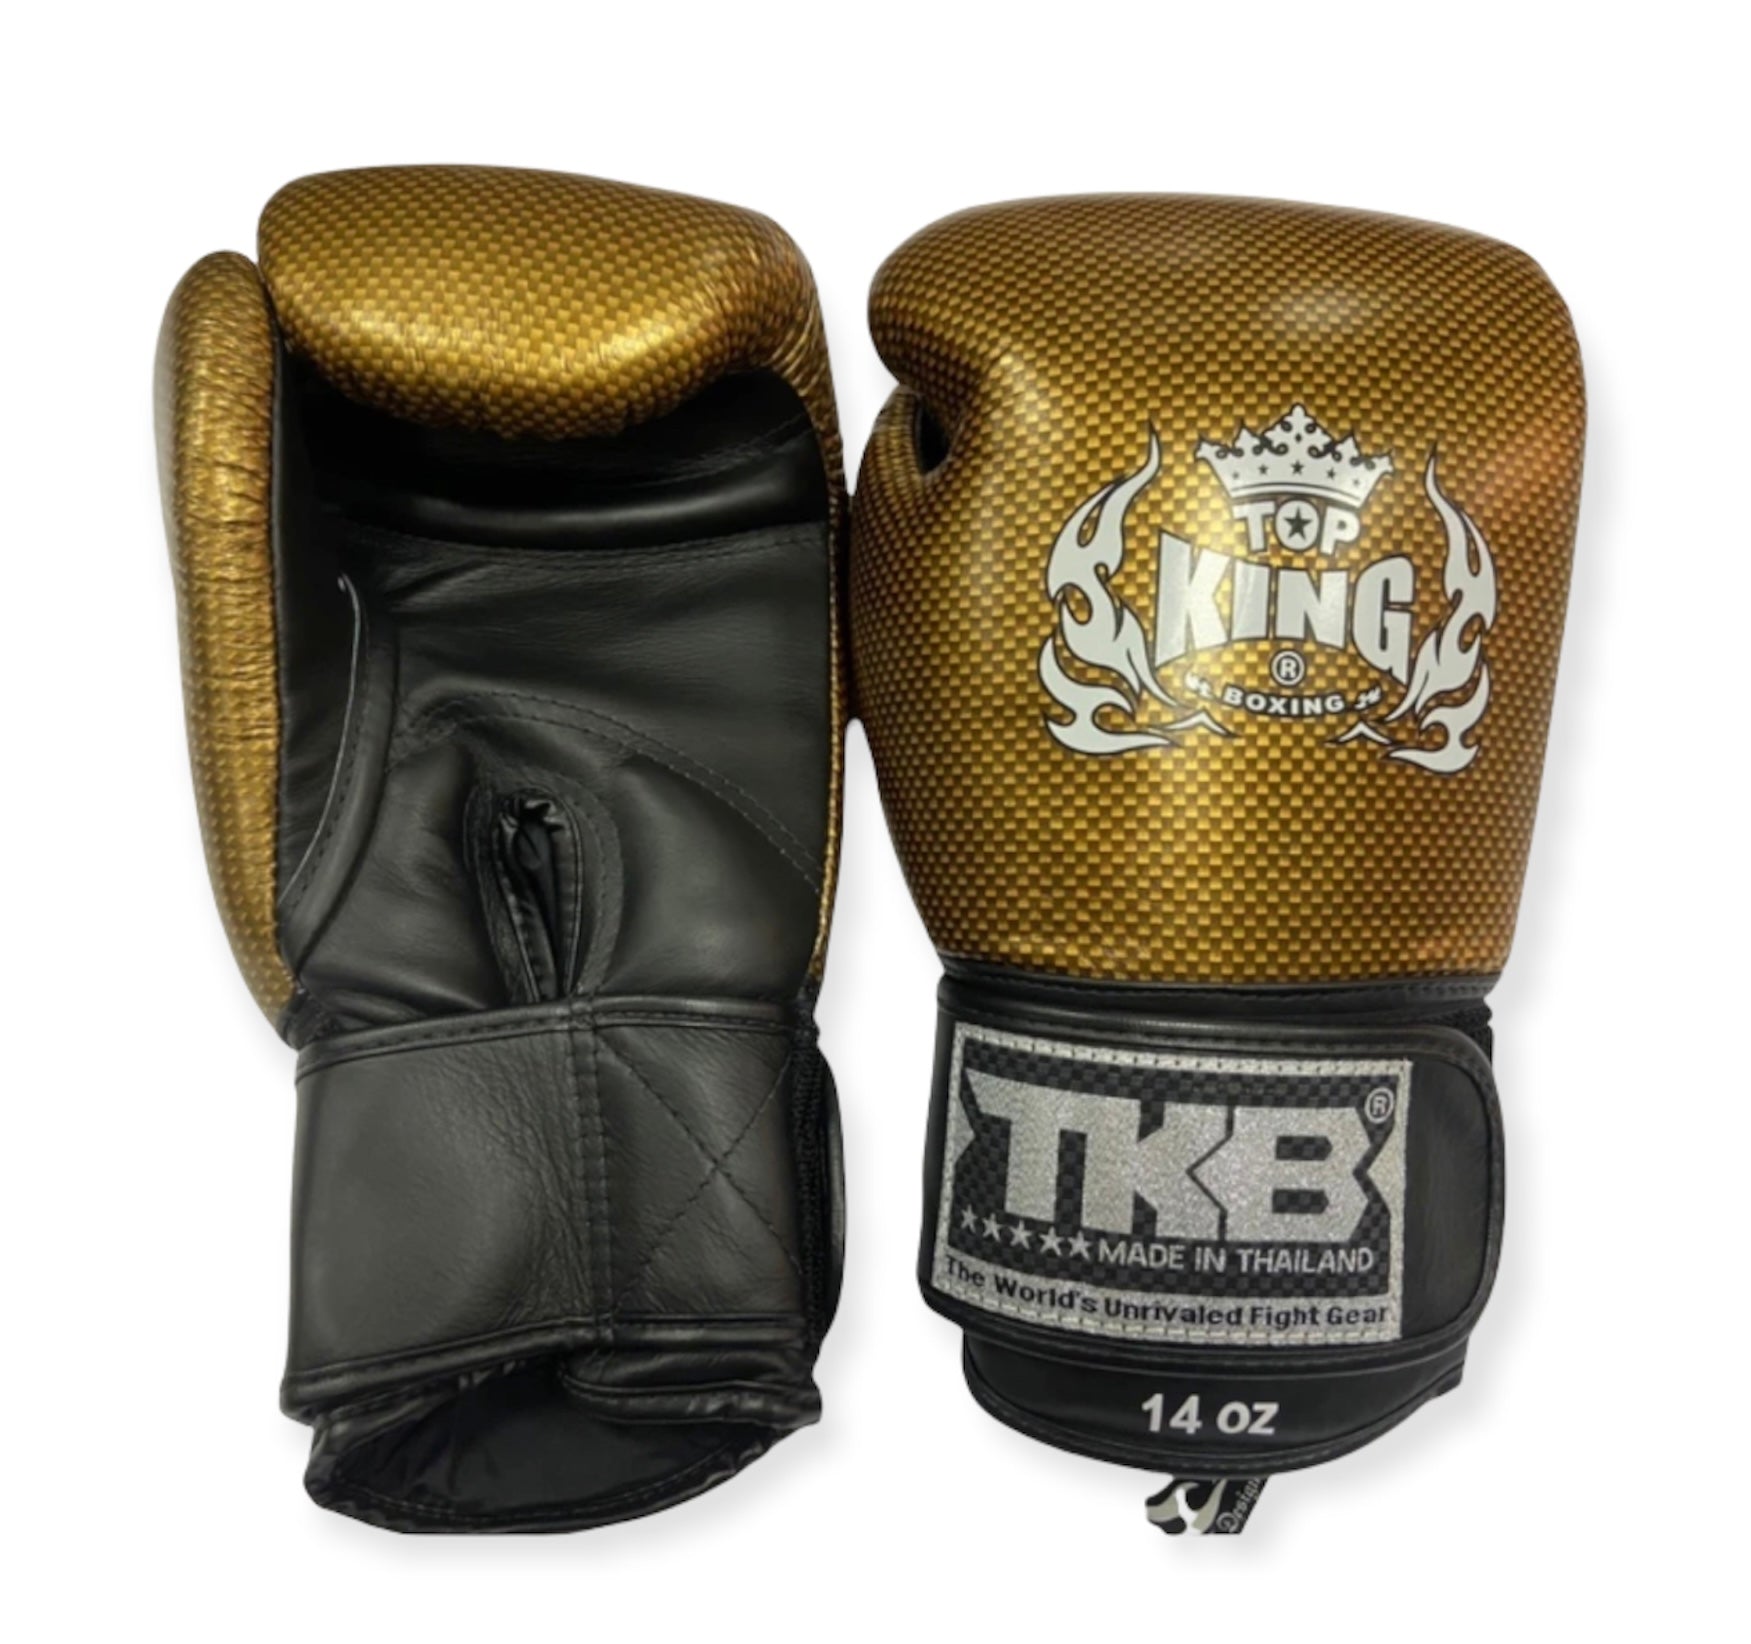 泰拳拳套 Thai Boxing Gloves:Top King Super Snake TKBGEM02 Black Gold